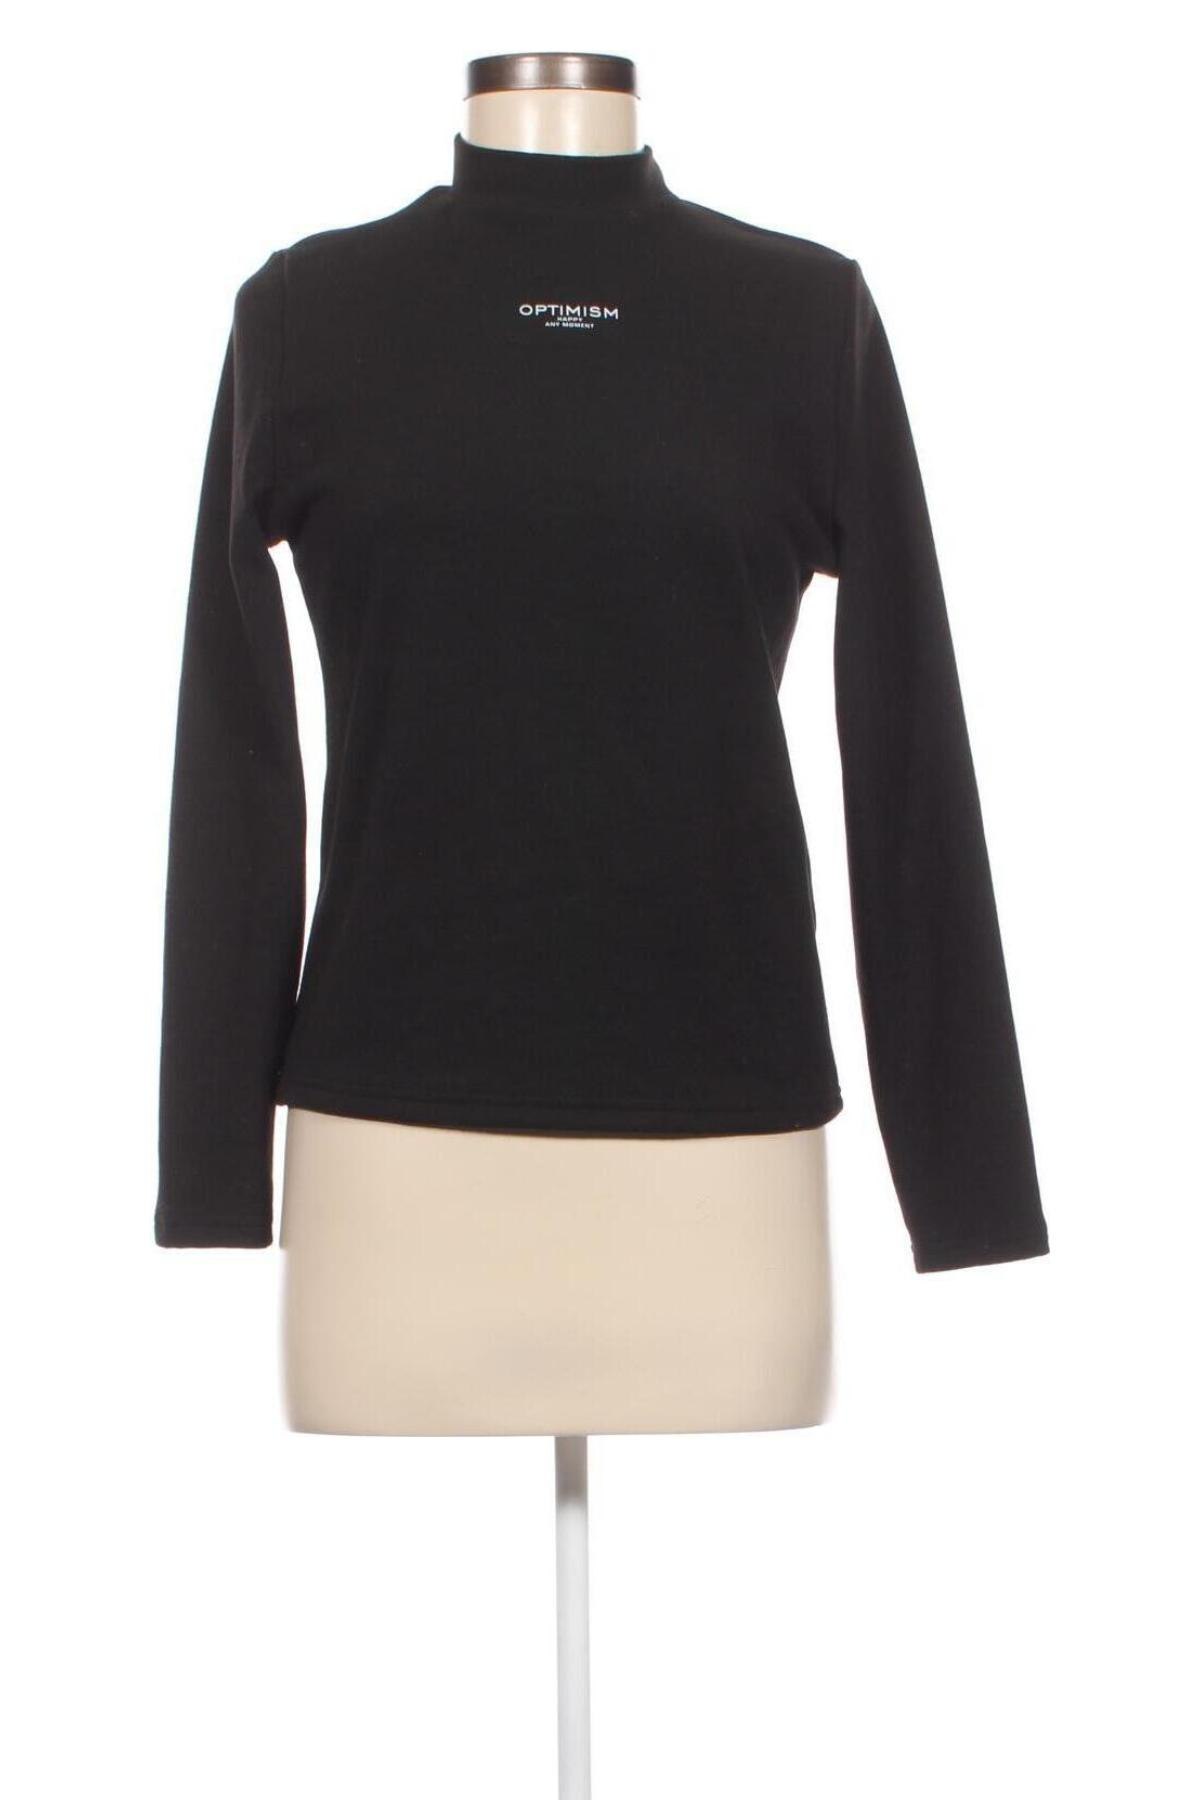 Дамска блуза DAZY, Размер S, Цвят Черен, Цена 4,75 лв.